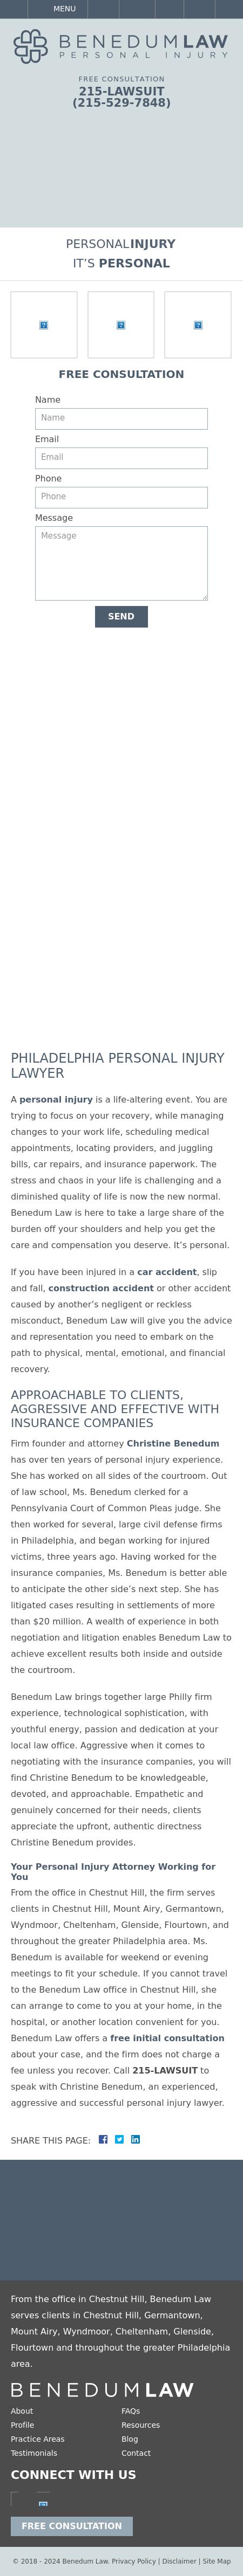 Benedum Law - Philadelphia PA Lawyers